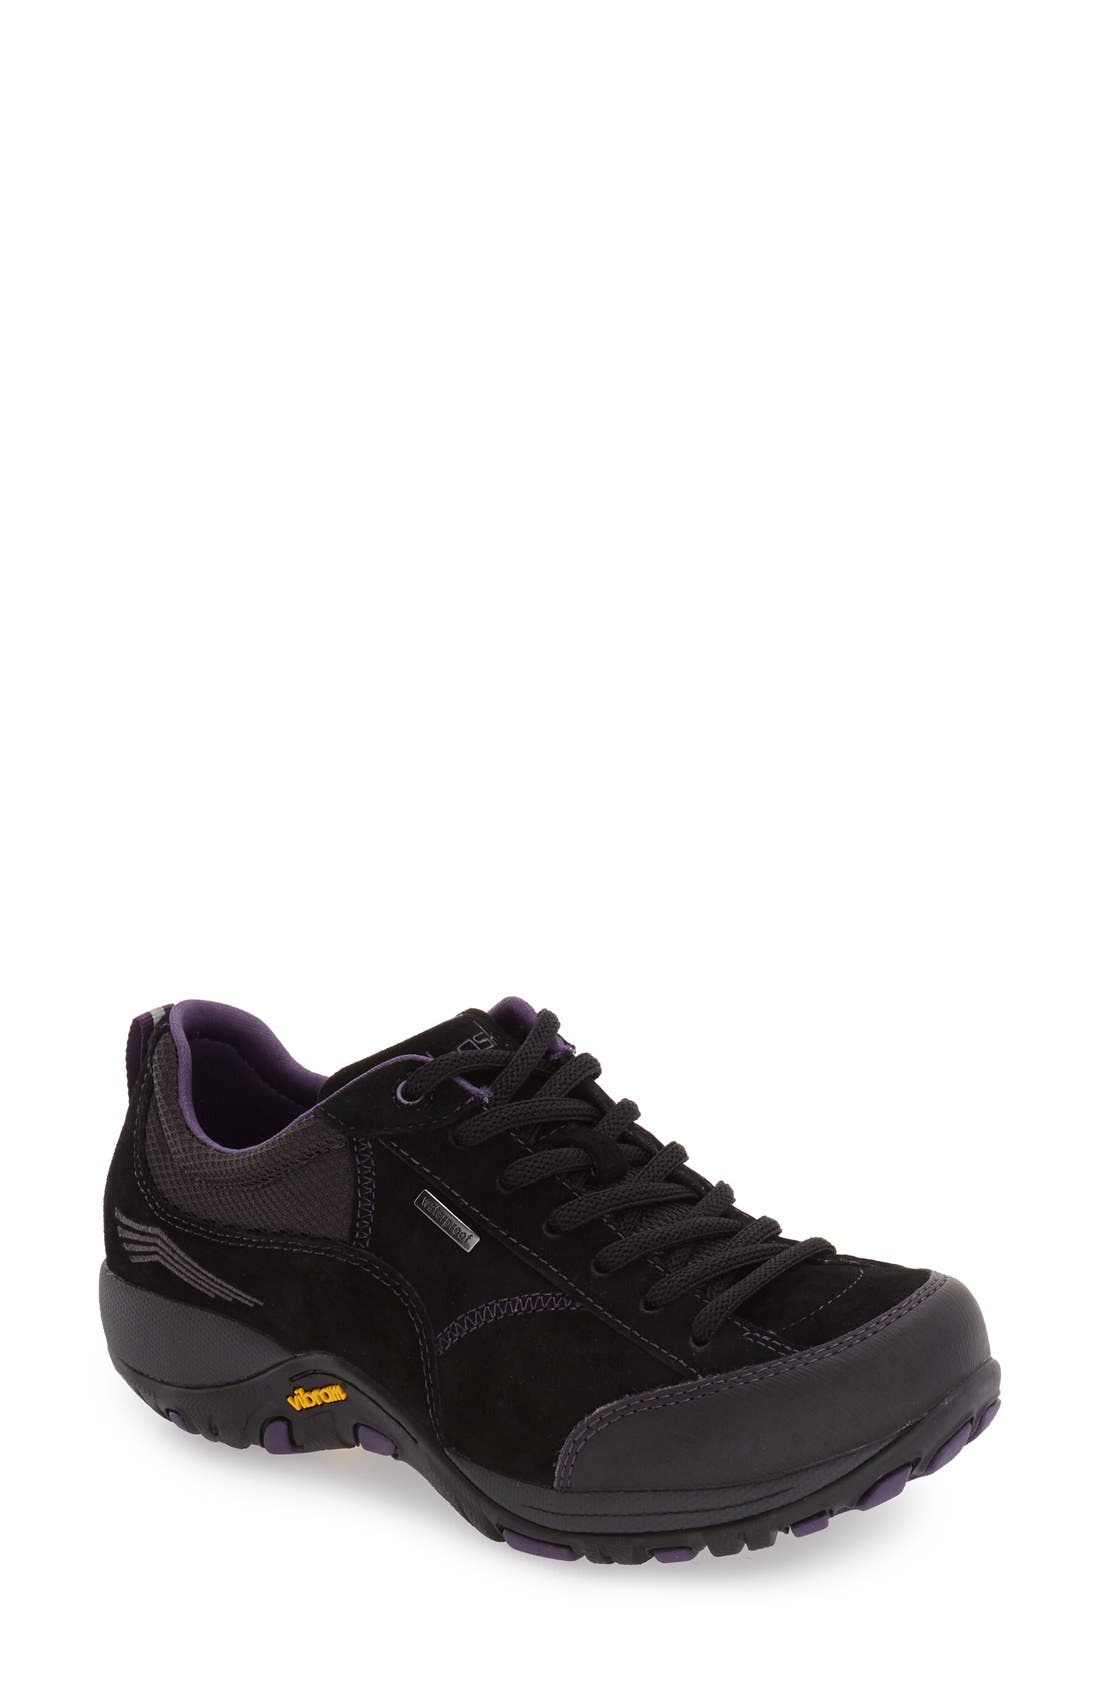 dansko black tennis shoes